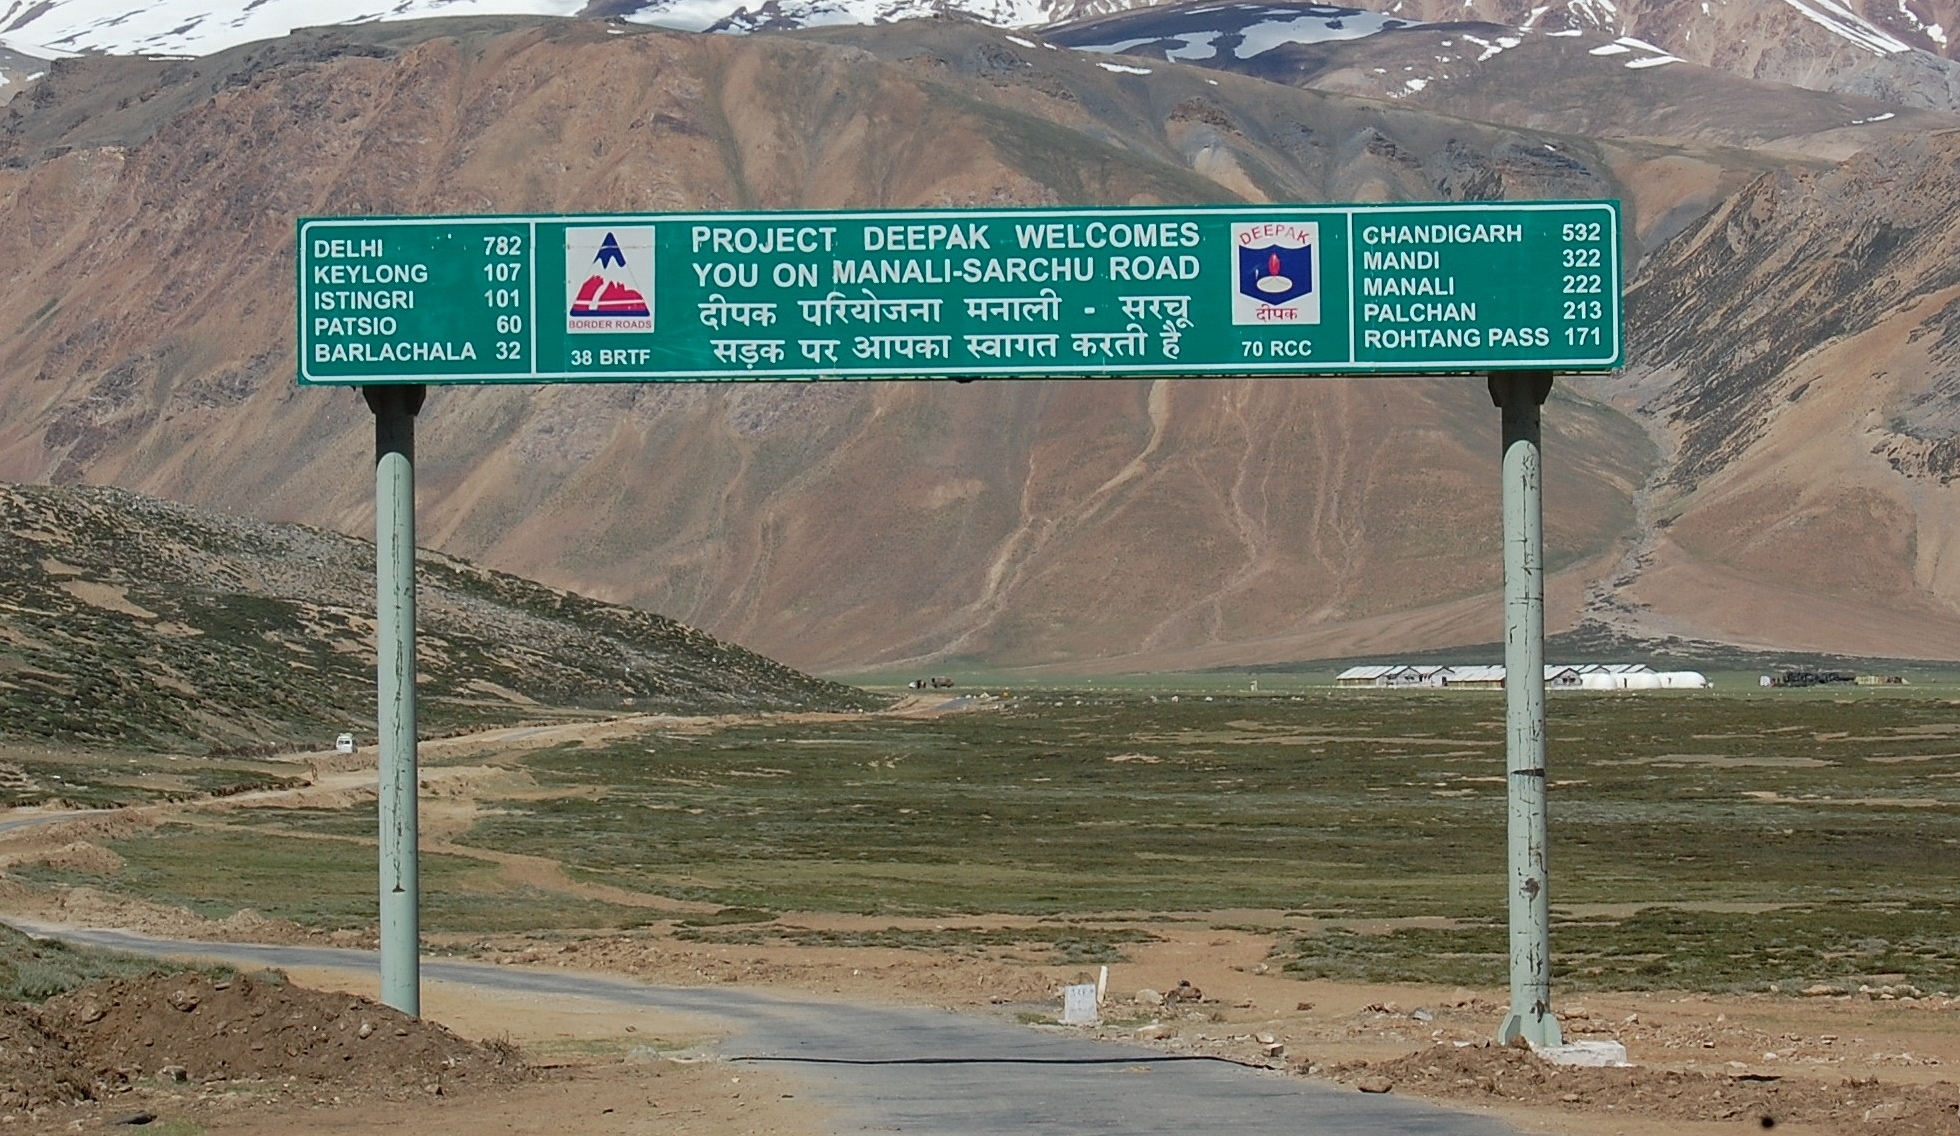 Manali - Sarchu road built by BRO. 